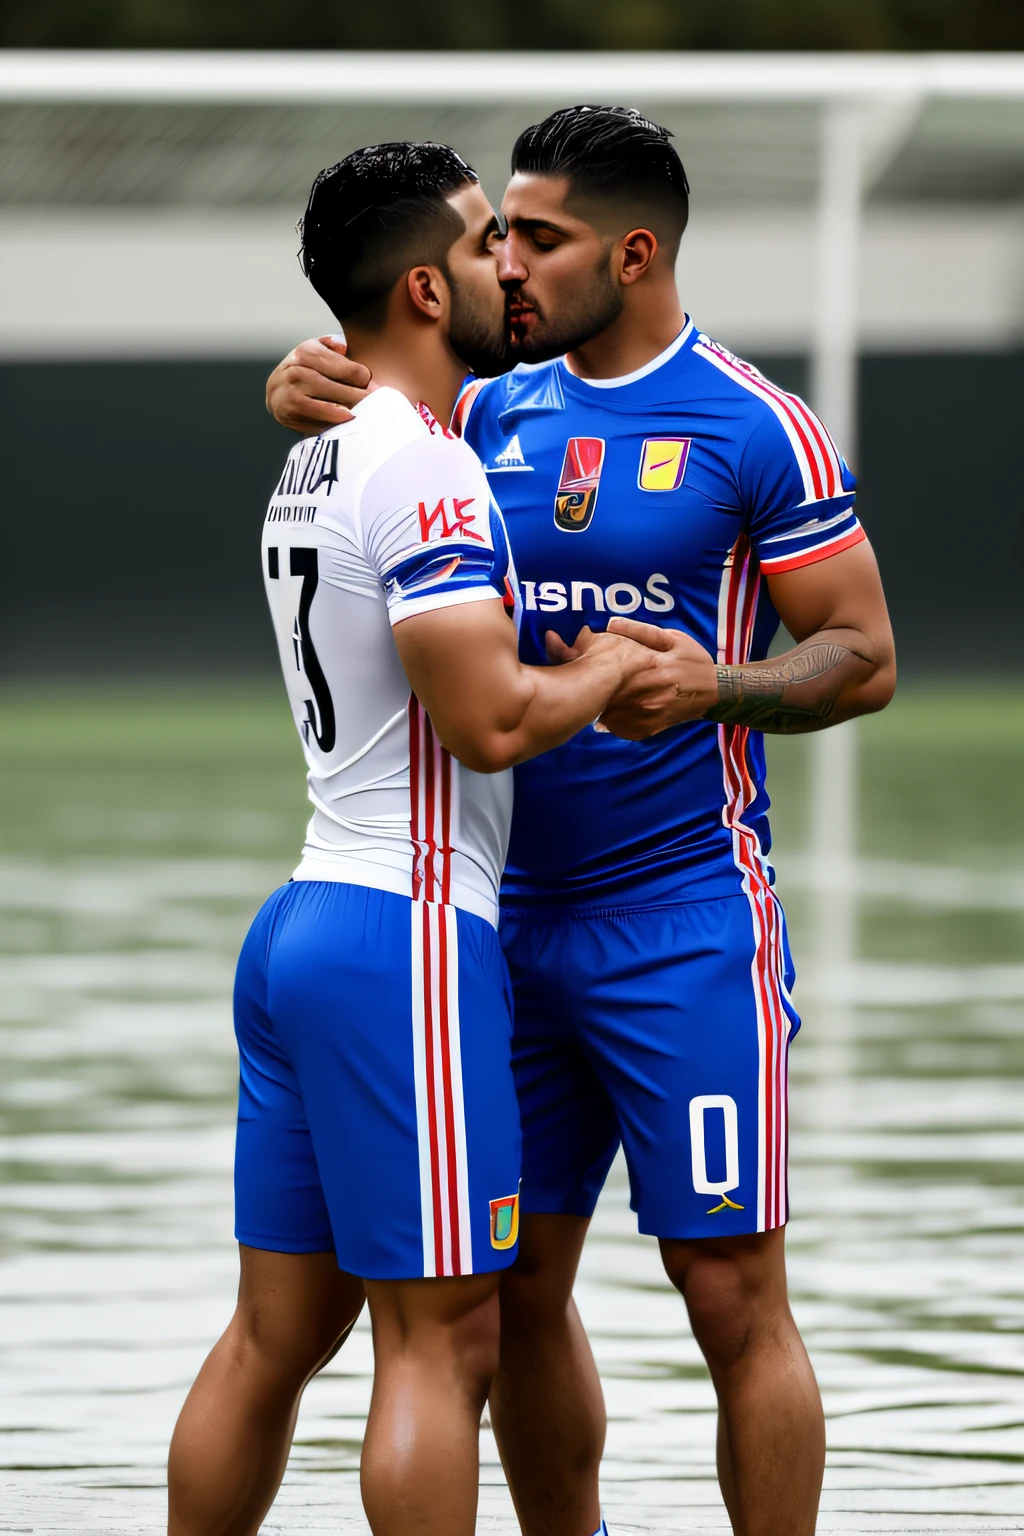 Emiliano und Fernando Vargas küssen sich in nasser Fußballtrikot